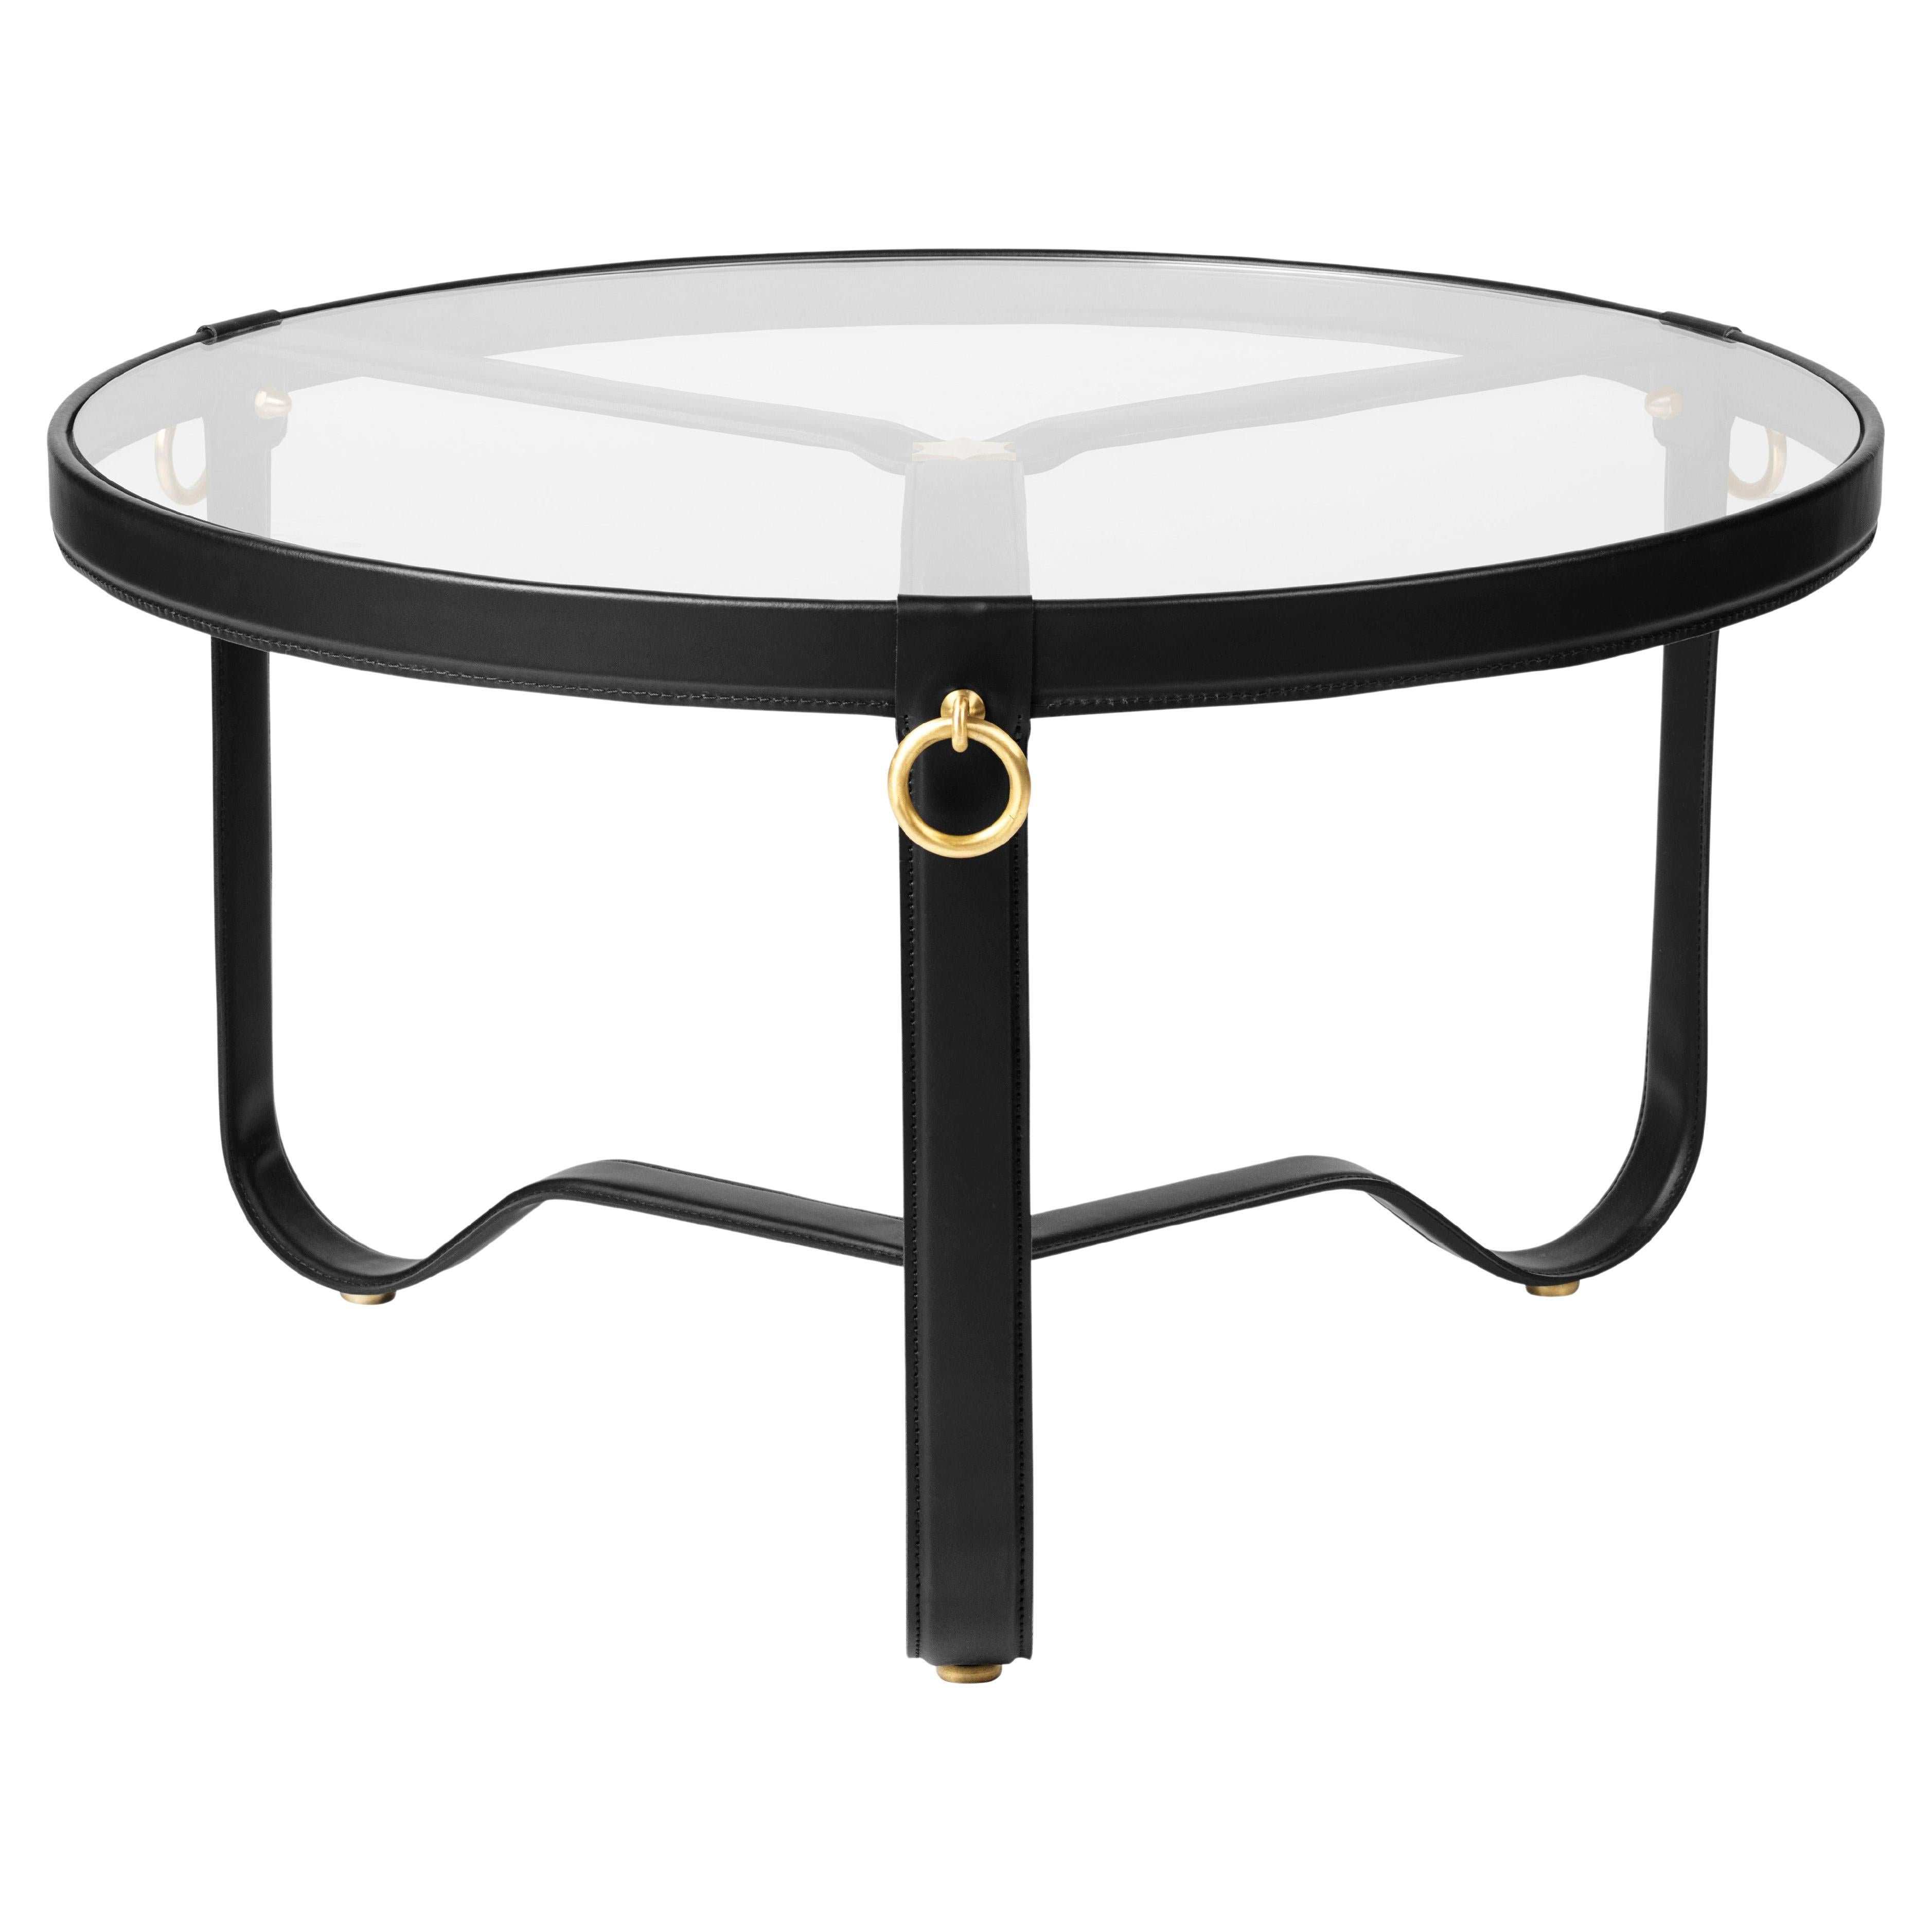 Table basse ou d'appoint en verre et cuir noir 'Circulaire' de Jacques Adnet pour GUBI